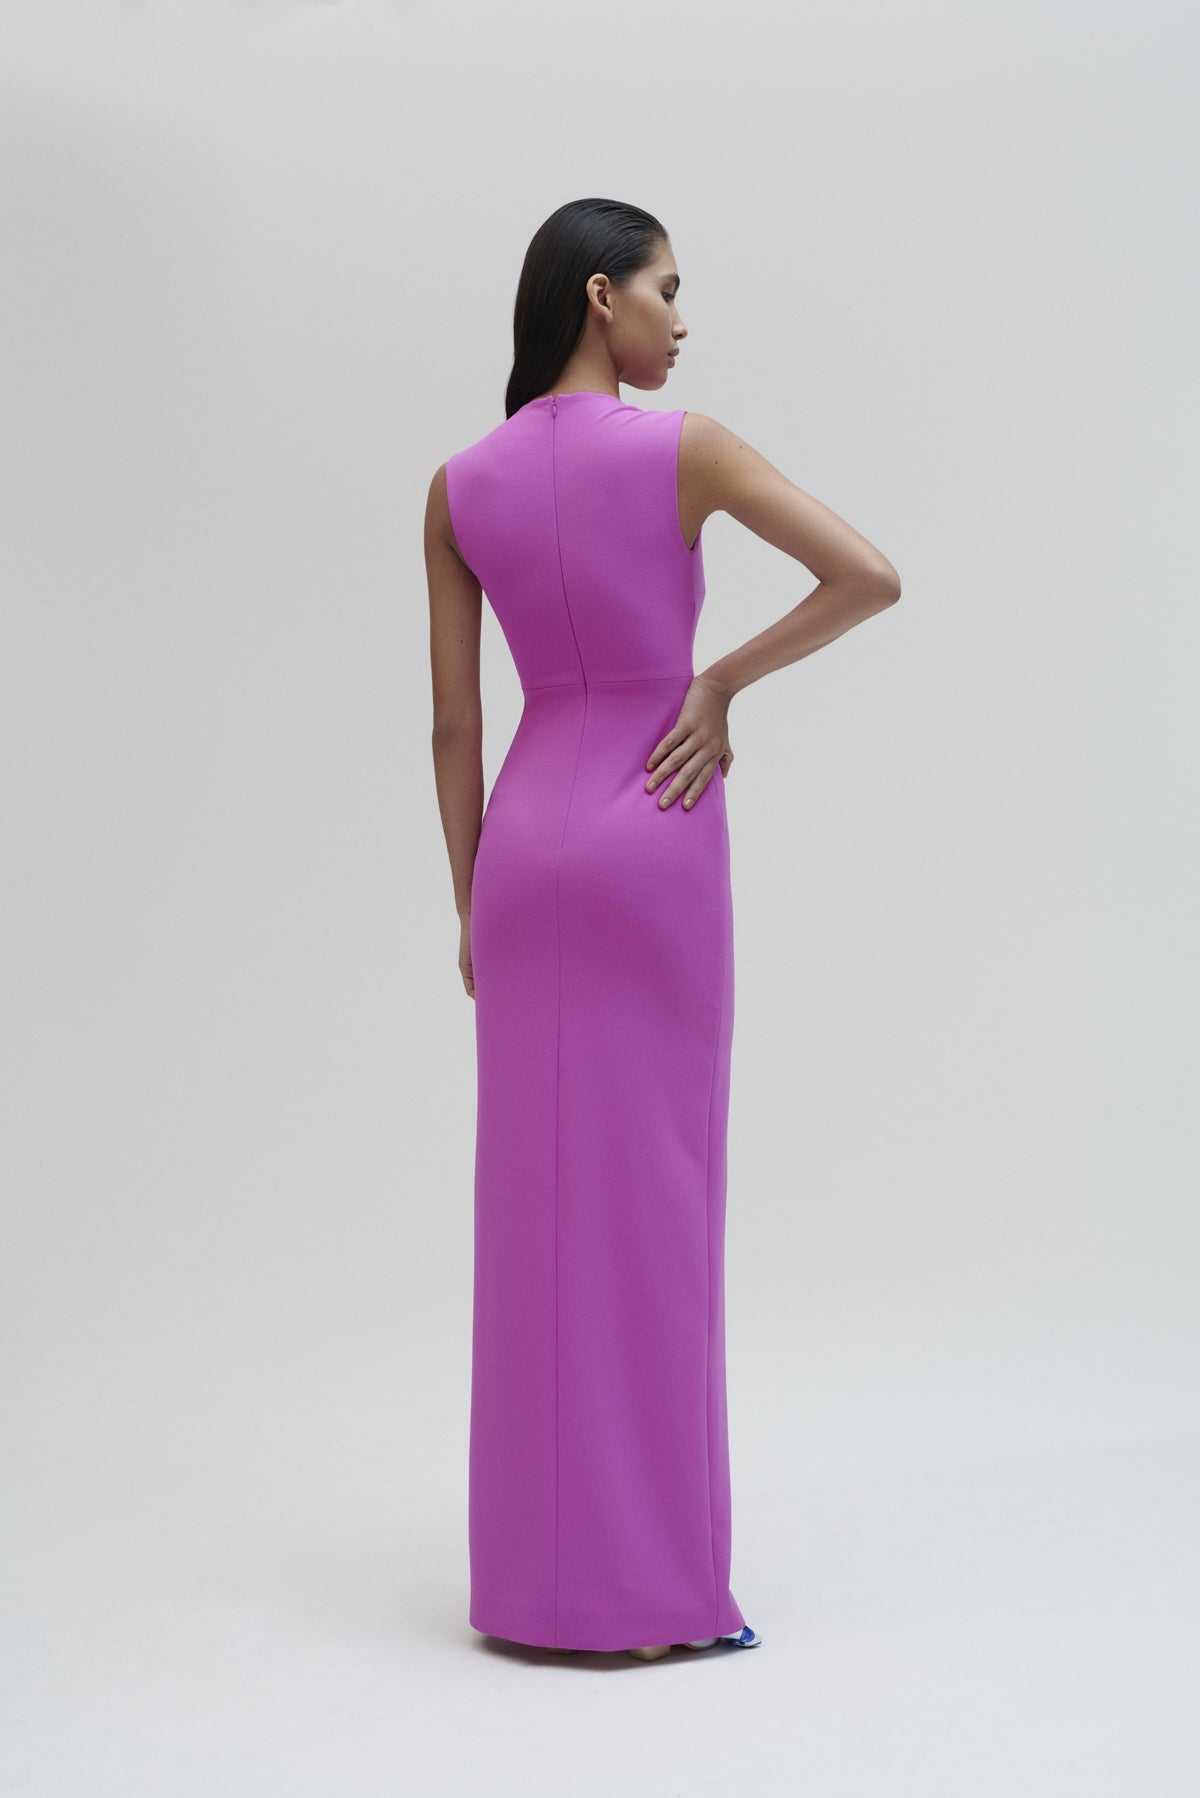 The Sofia Maxi Dress in Bright Purple